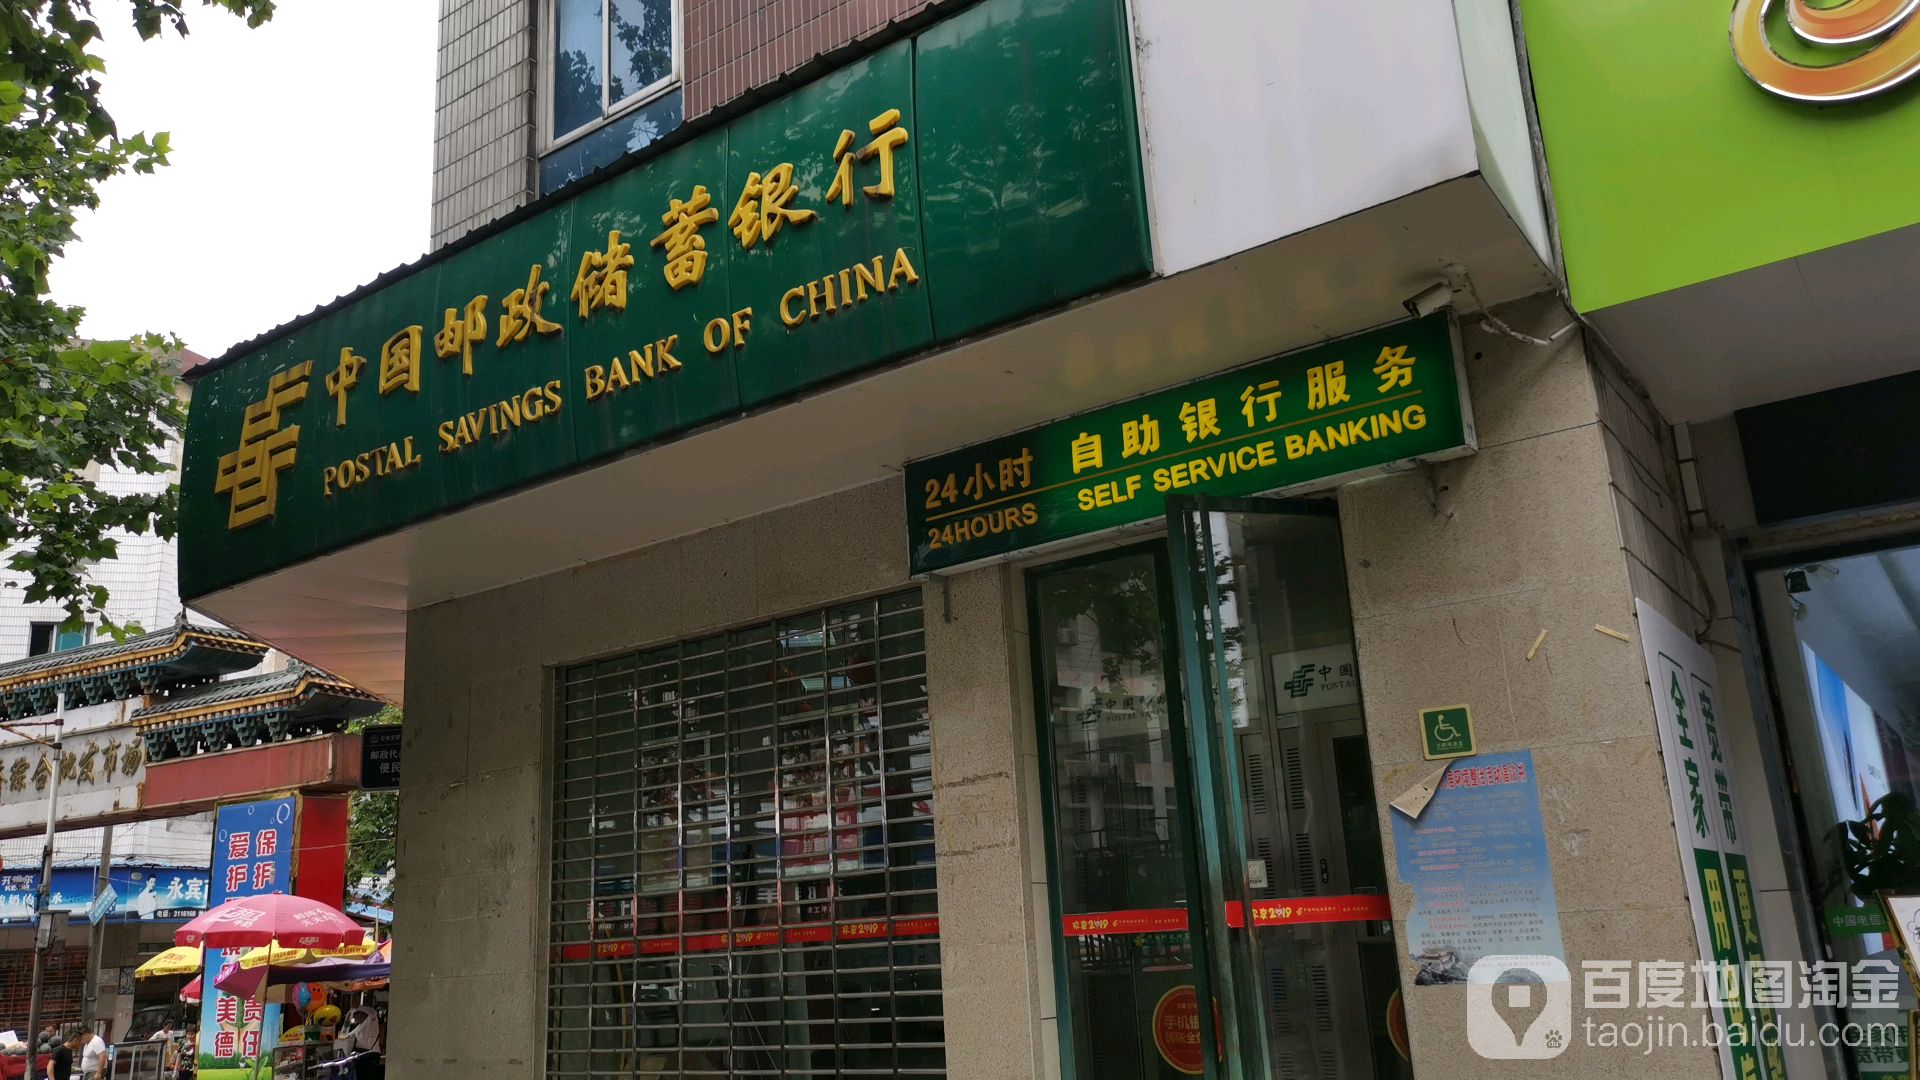 中國郵政儲蓄銀行24小時自助銀行(解放路支行)